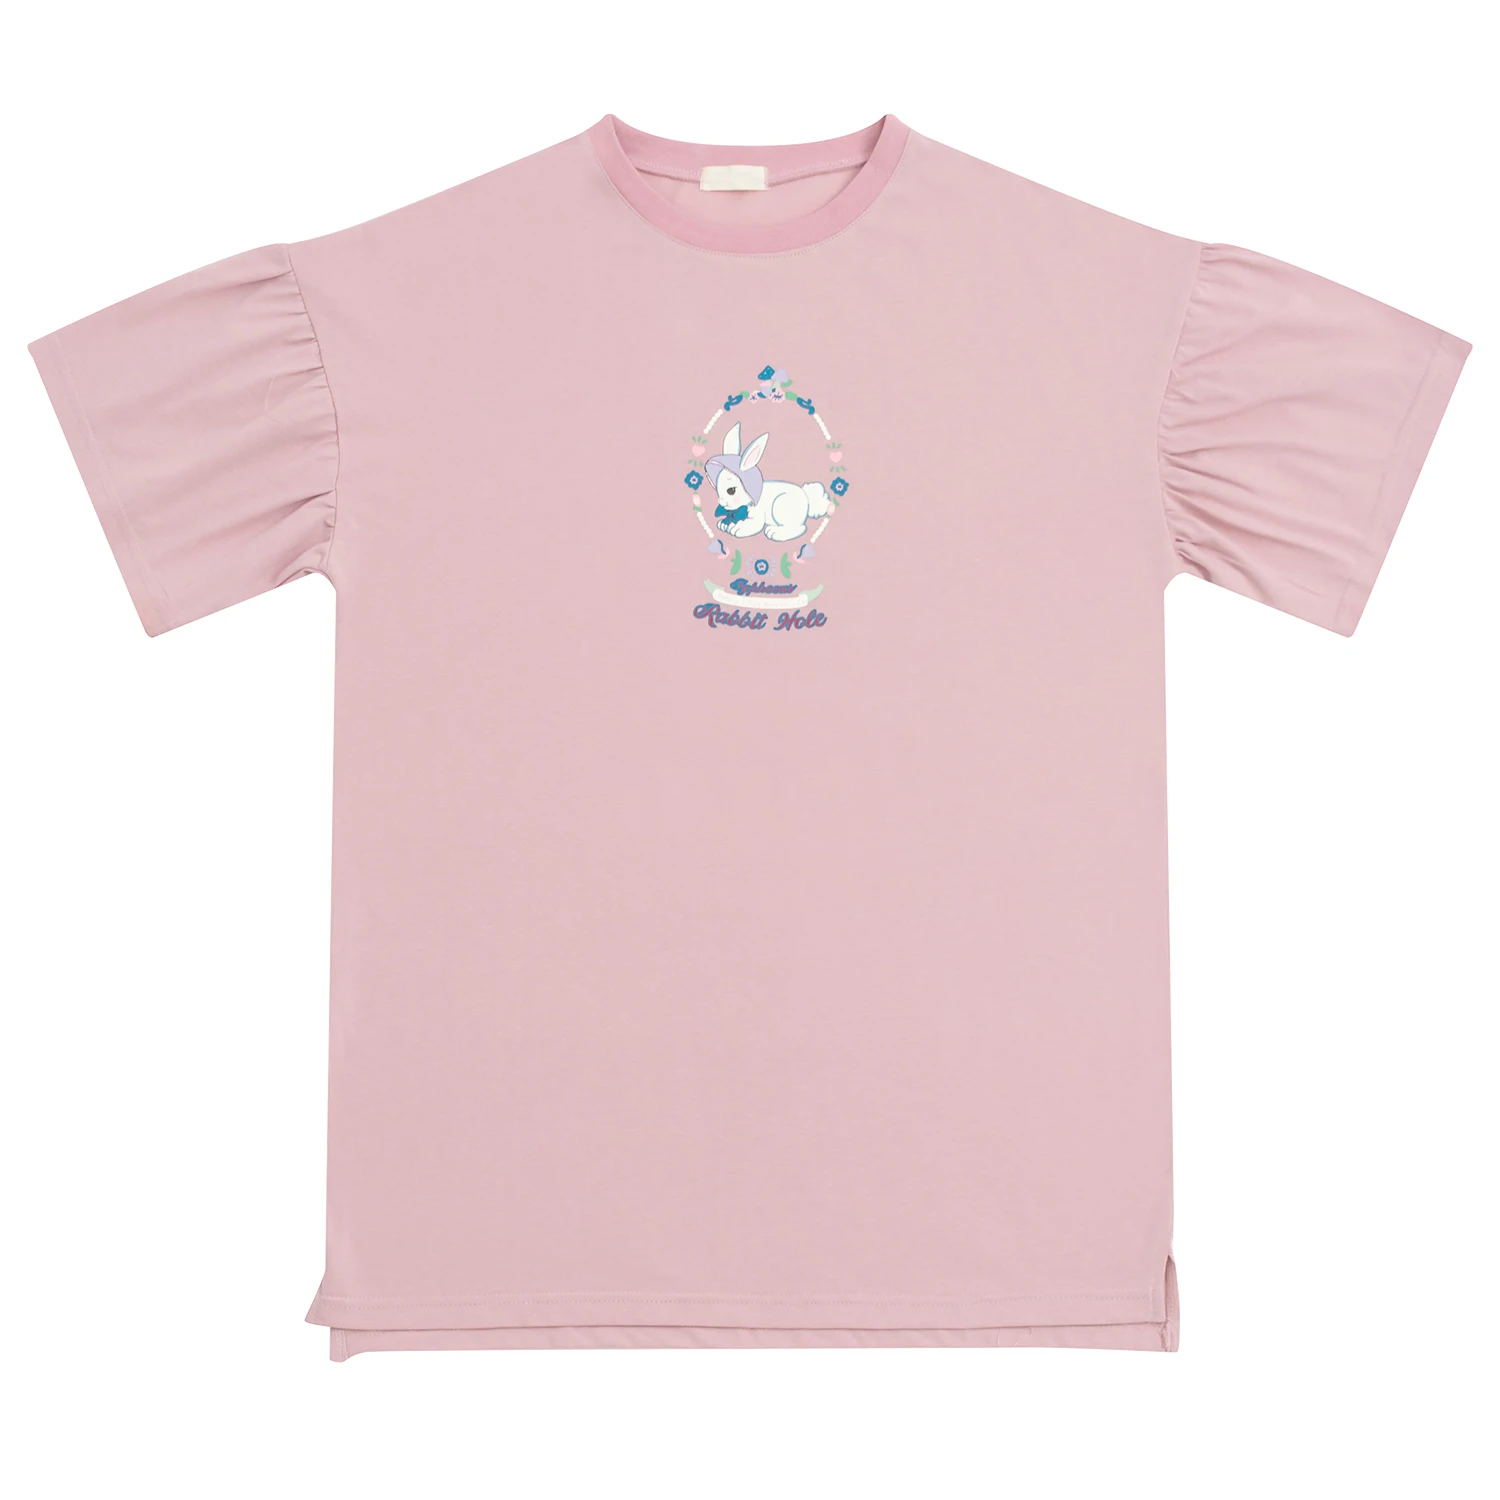 Футболка женская хлопковая средней длины милая рубашка розового цвета в стиле